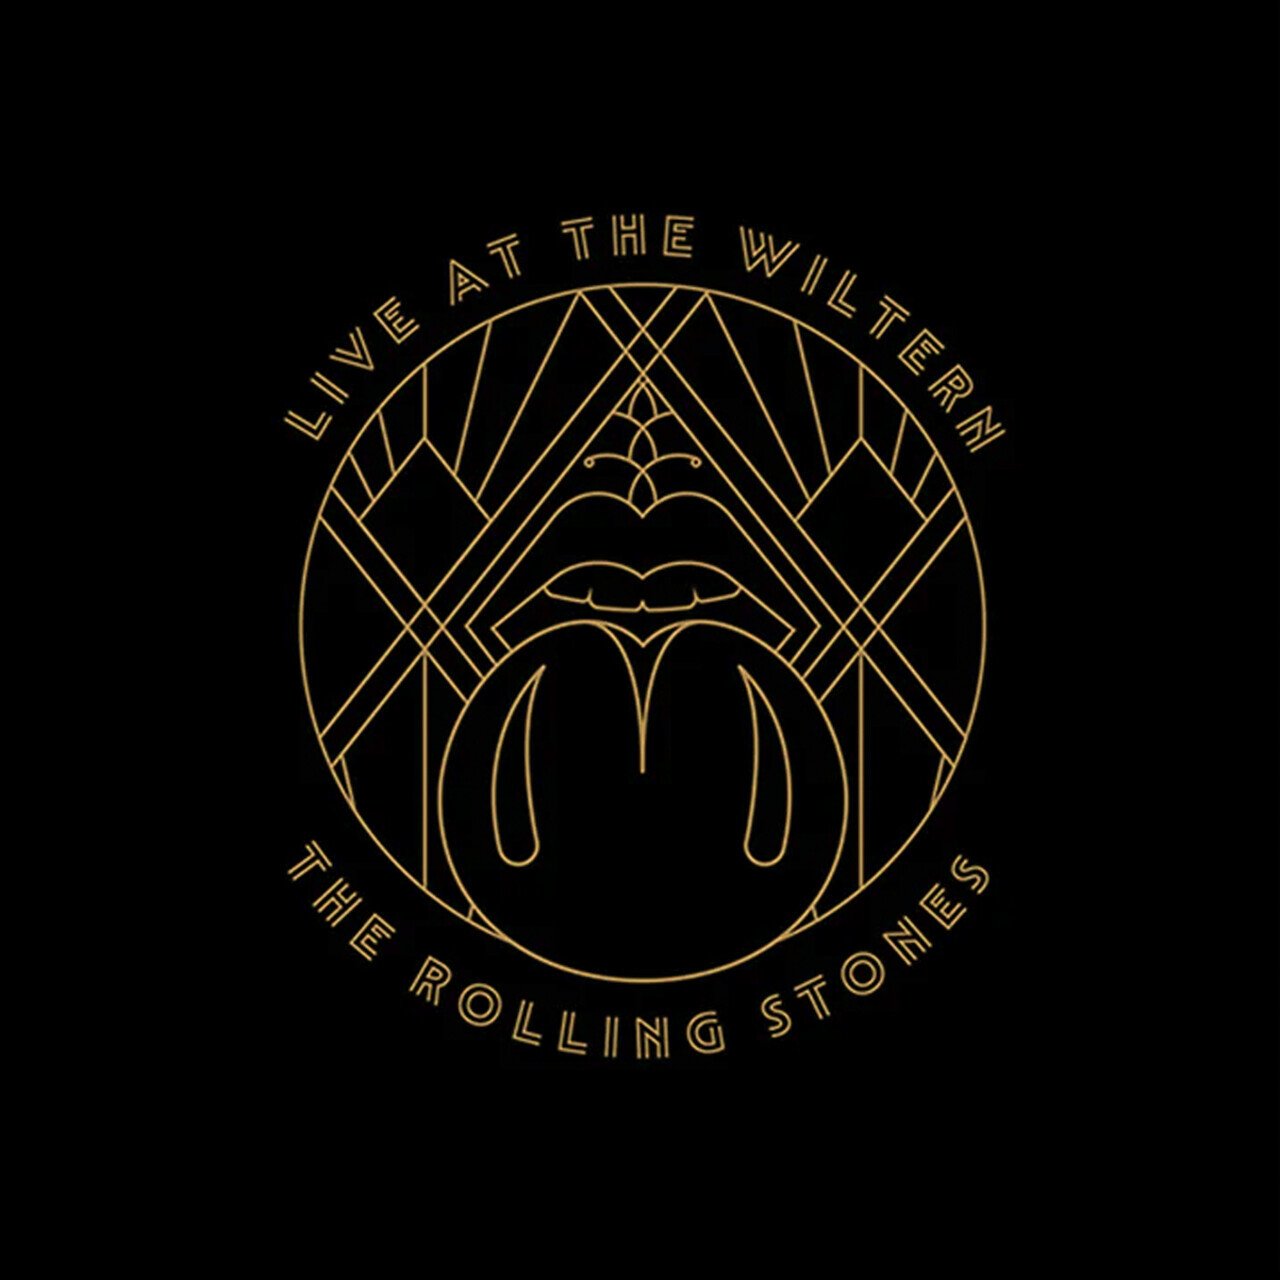 Рок Universal (Aus) Rolling Stones, The - Live At The Wiltern (Black Vinyl 3LP) акафист пресвятой богородице в честь иконы ее скоропослушница